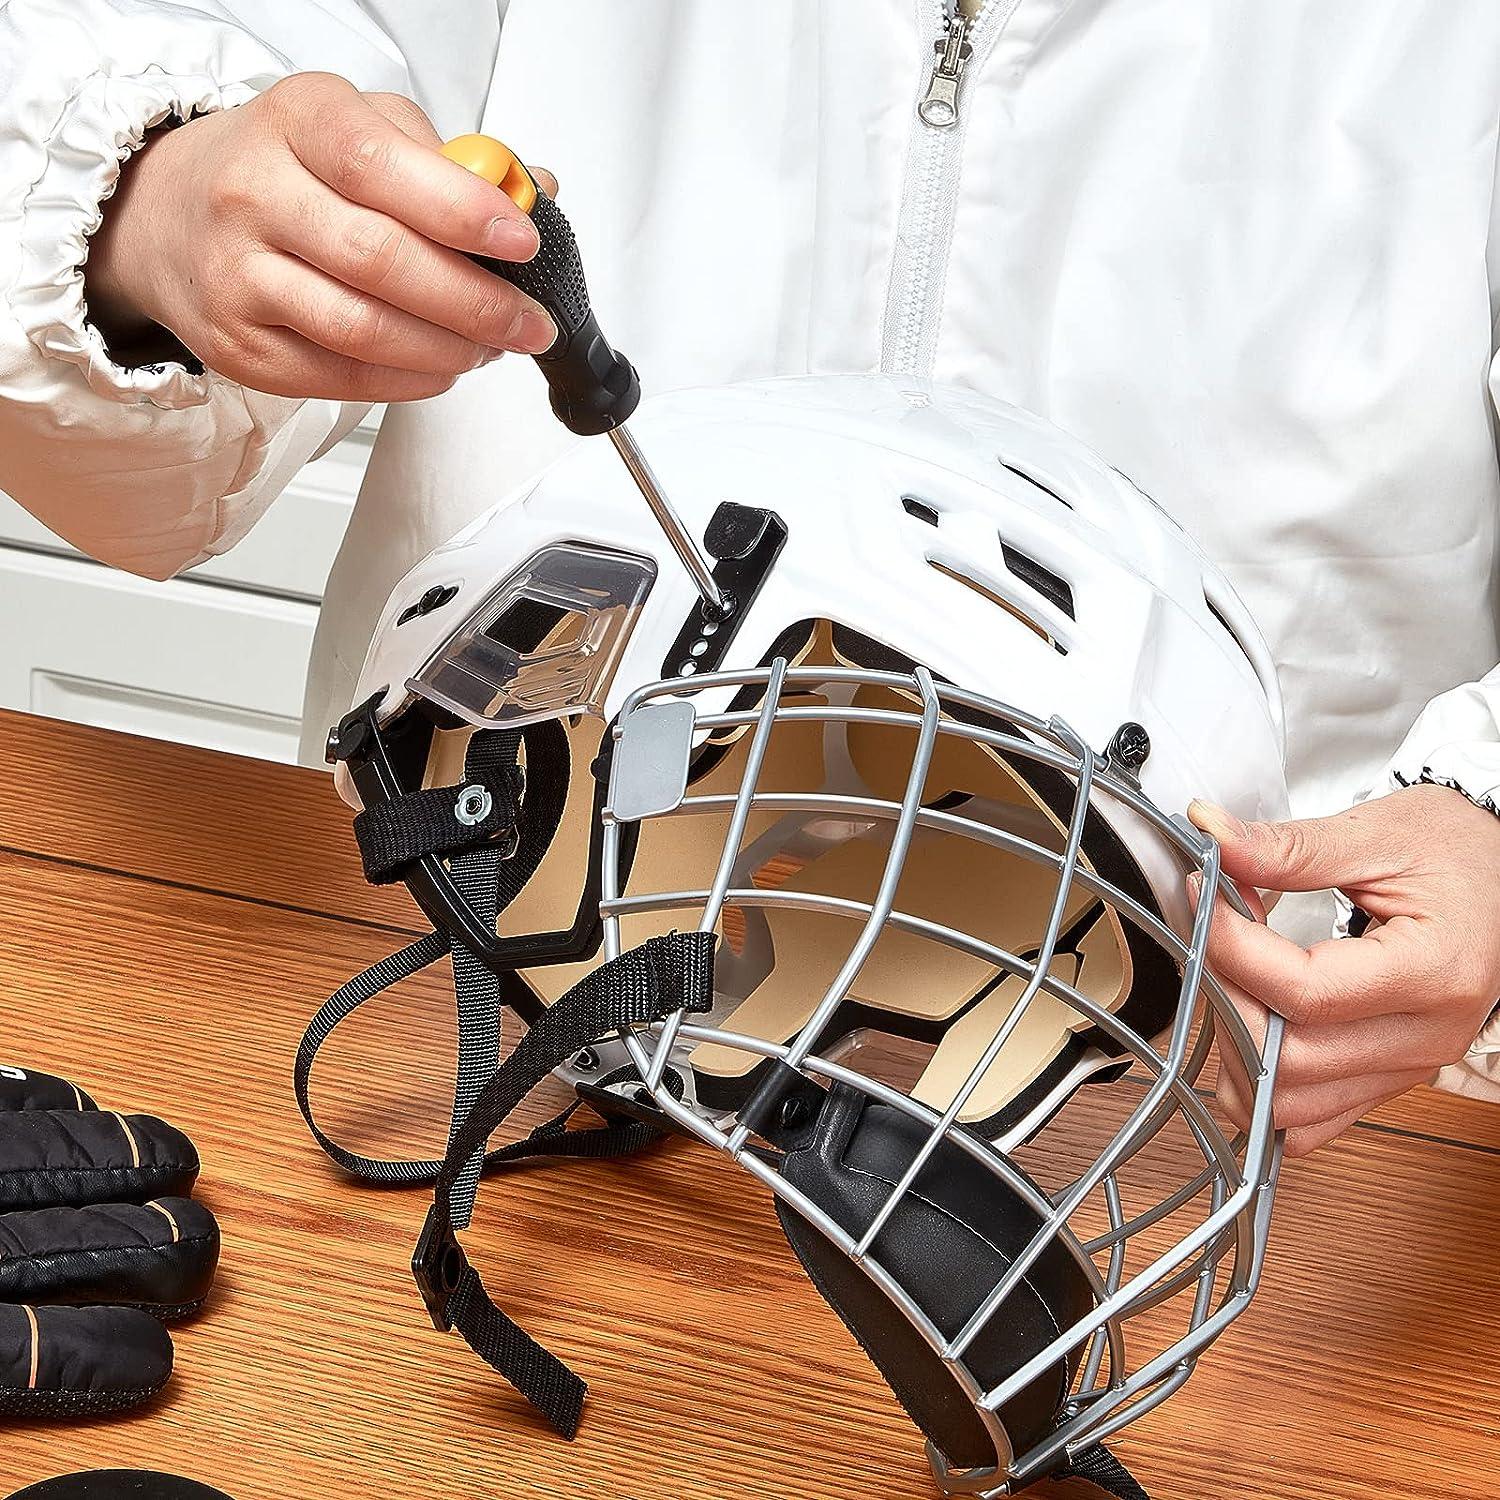 Hockey Helmet Repair Kit, 19-pc